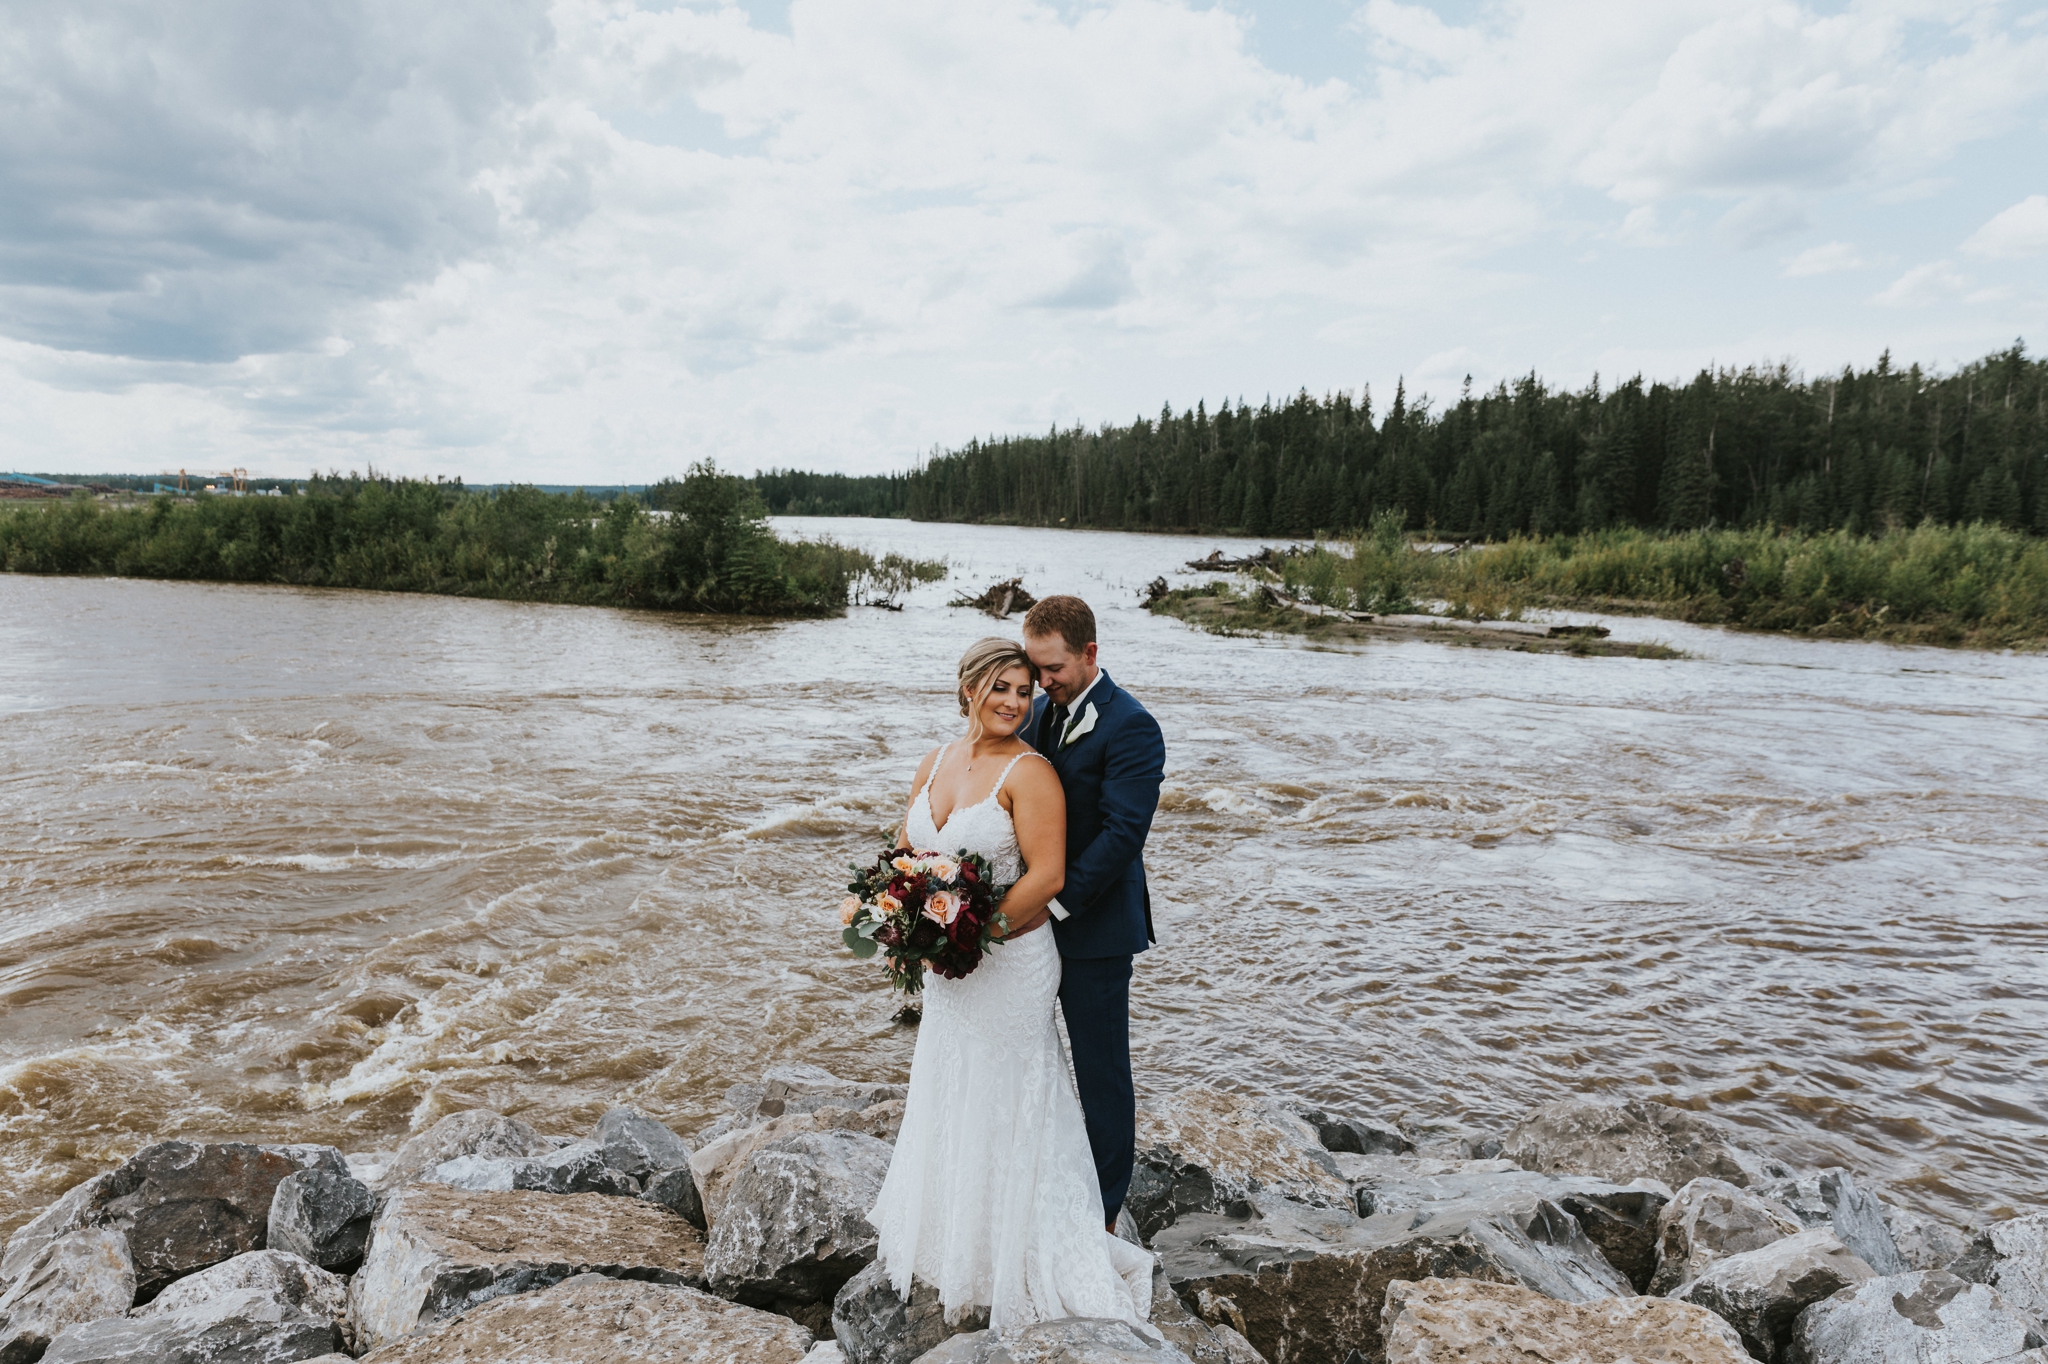 Edmonton Wedding Photographers - Wedding Photos in Whitecourt